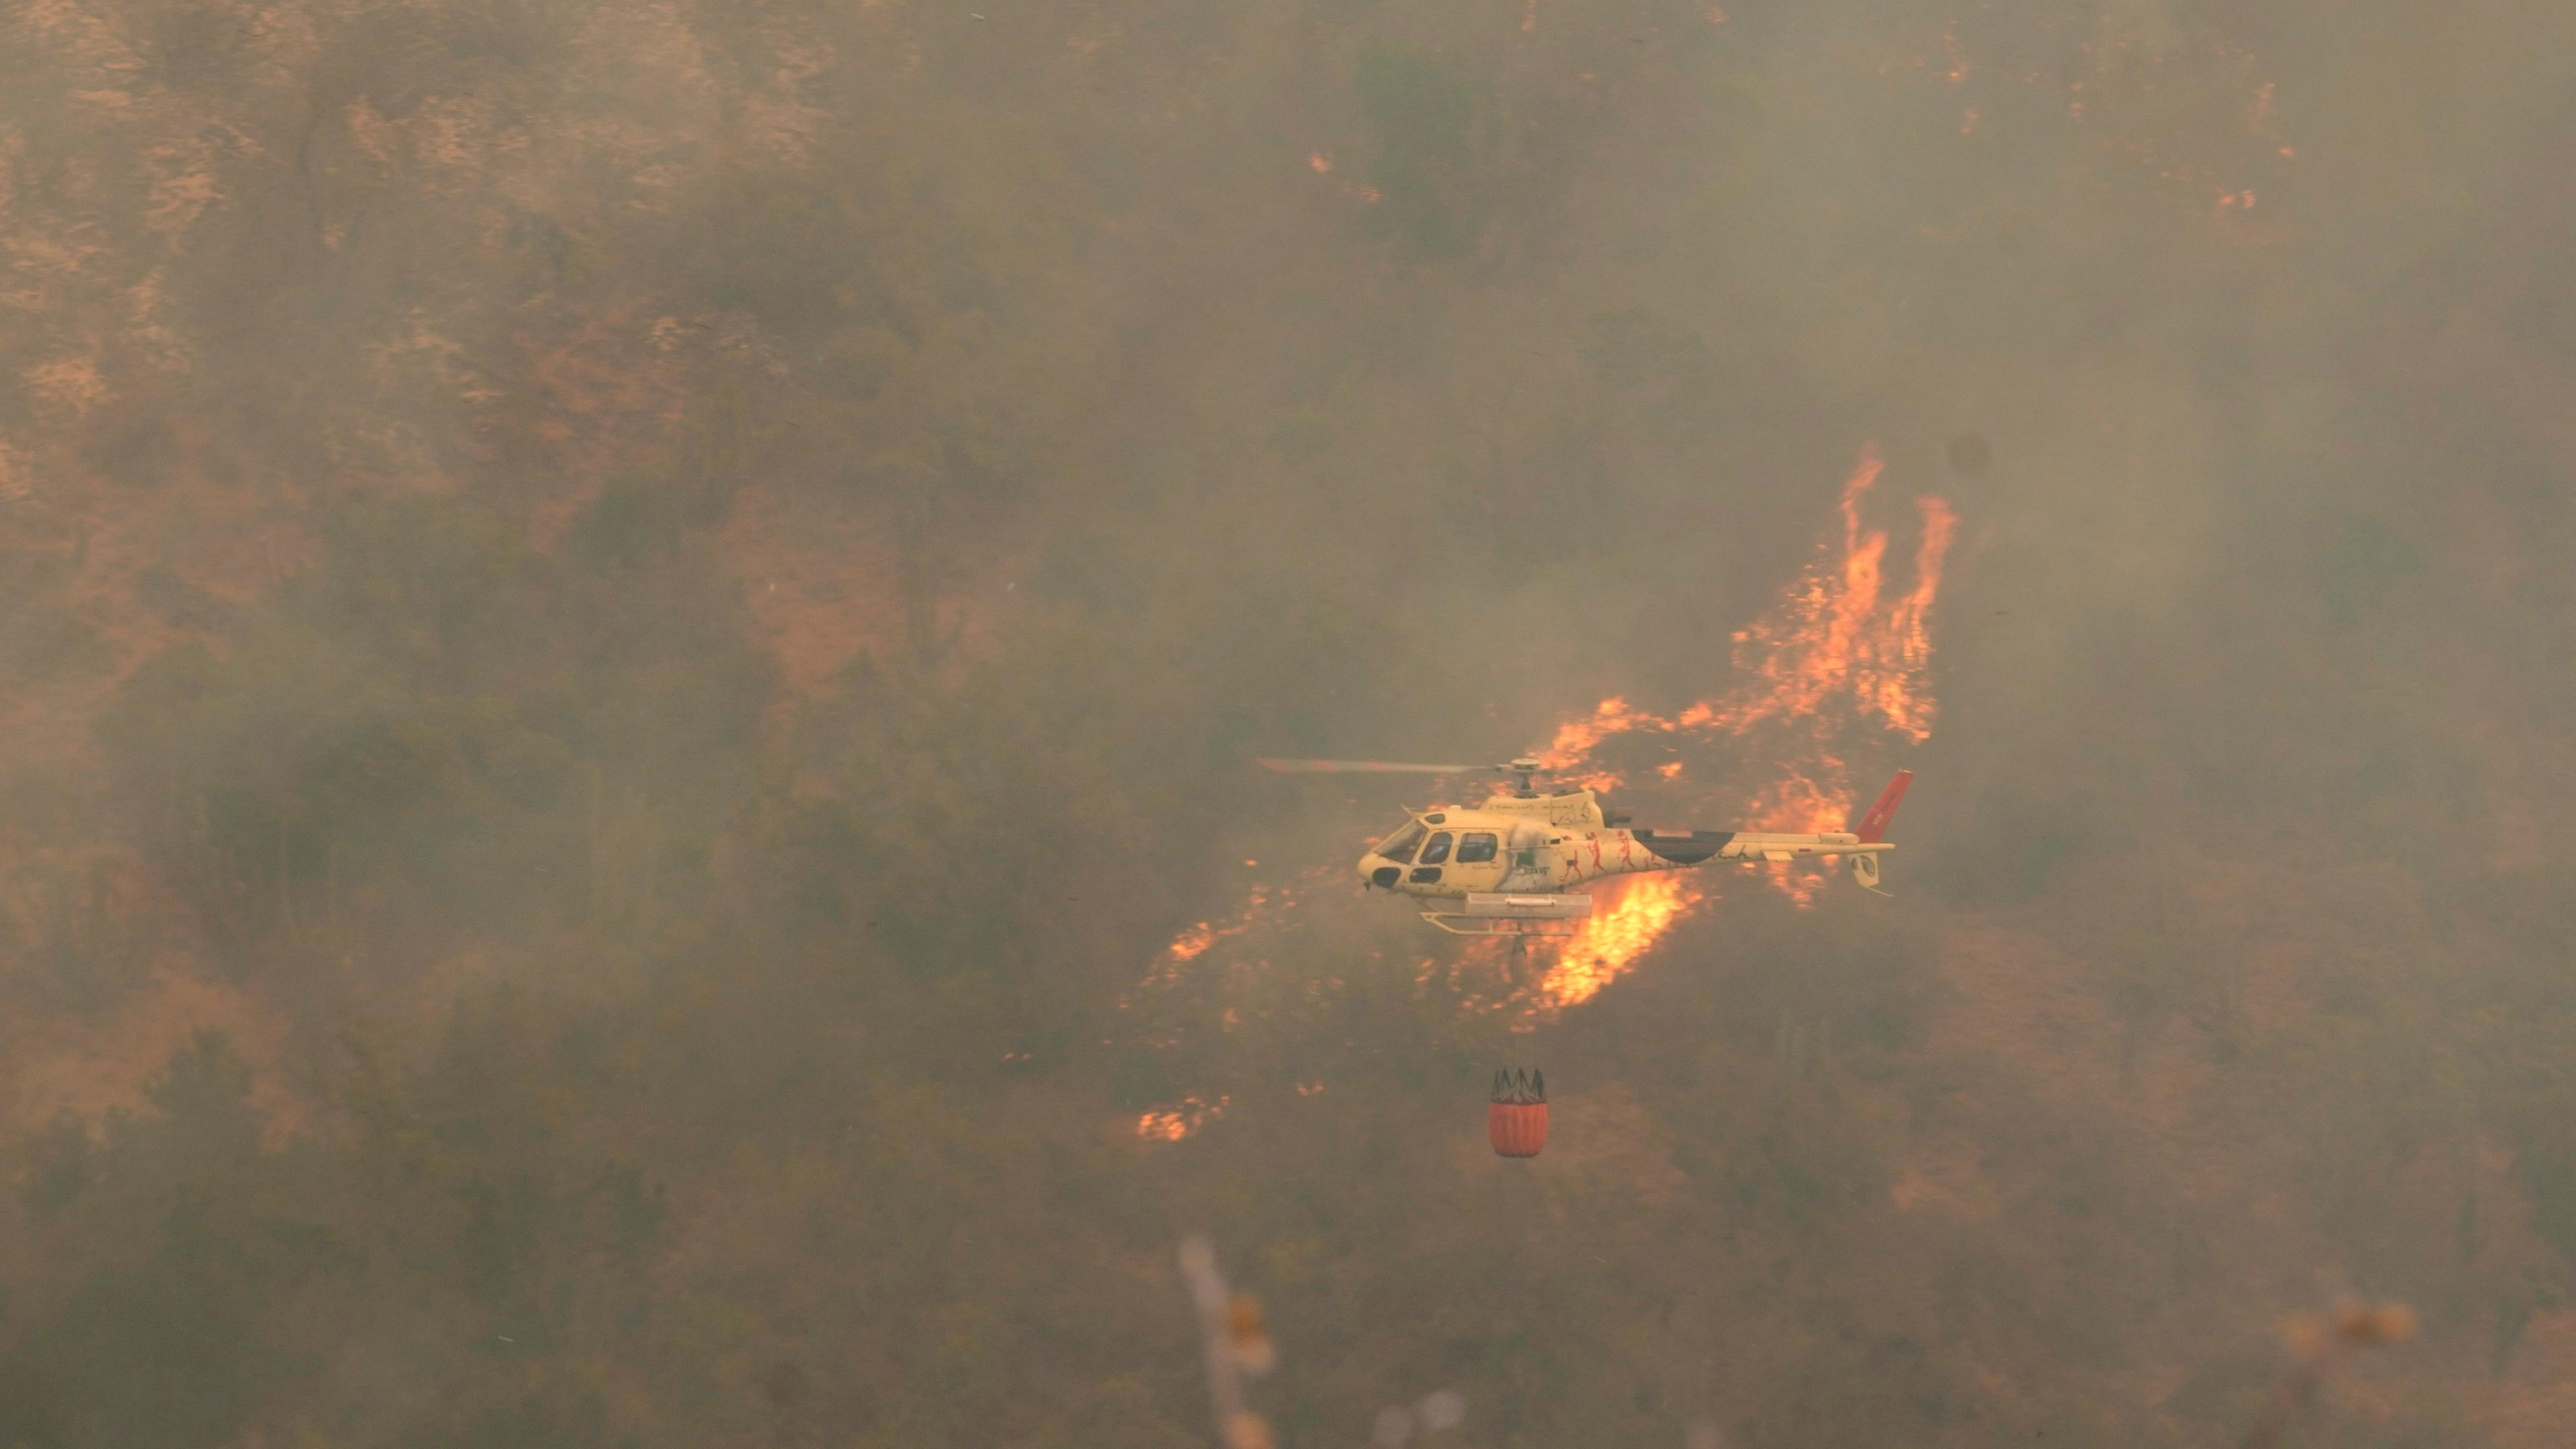 Archiv, 03.02.2024, Chile, Vina del Mar: Ein Hubschrauber fliegt über einen Waldbrand, der sich ausgebreitet hat.